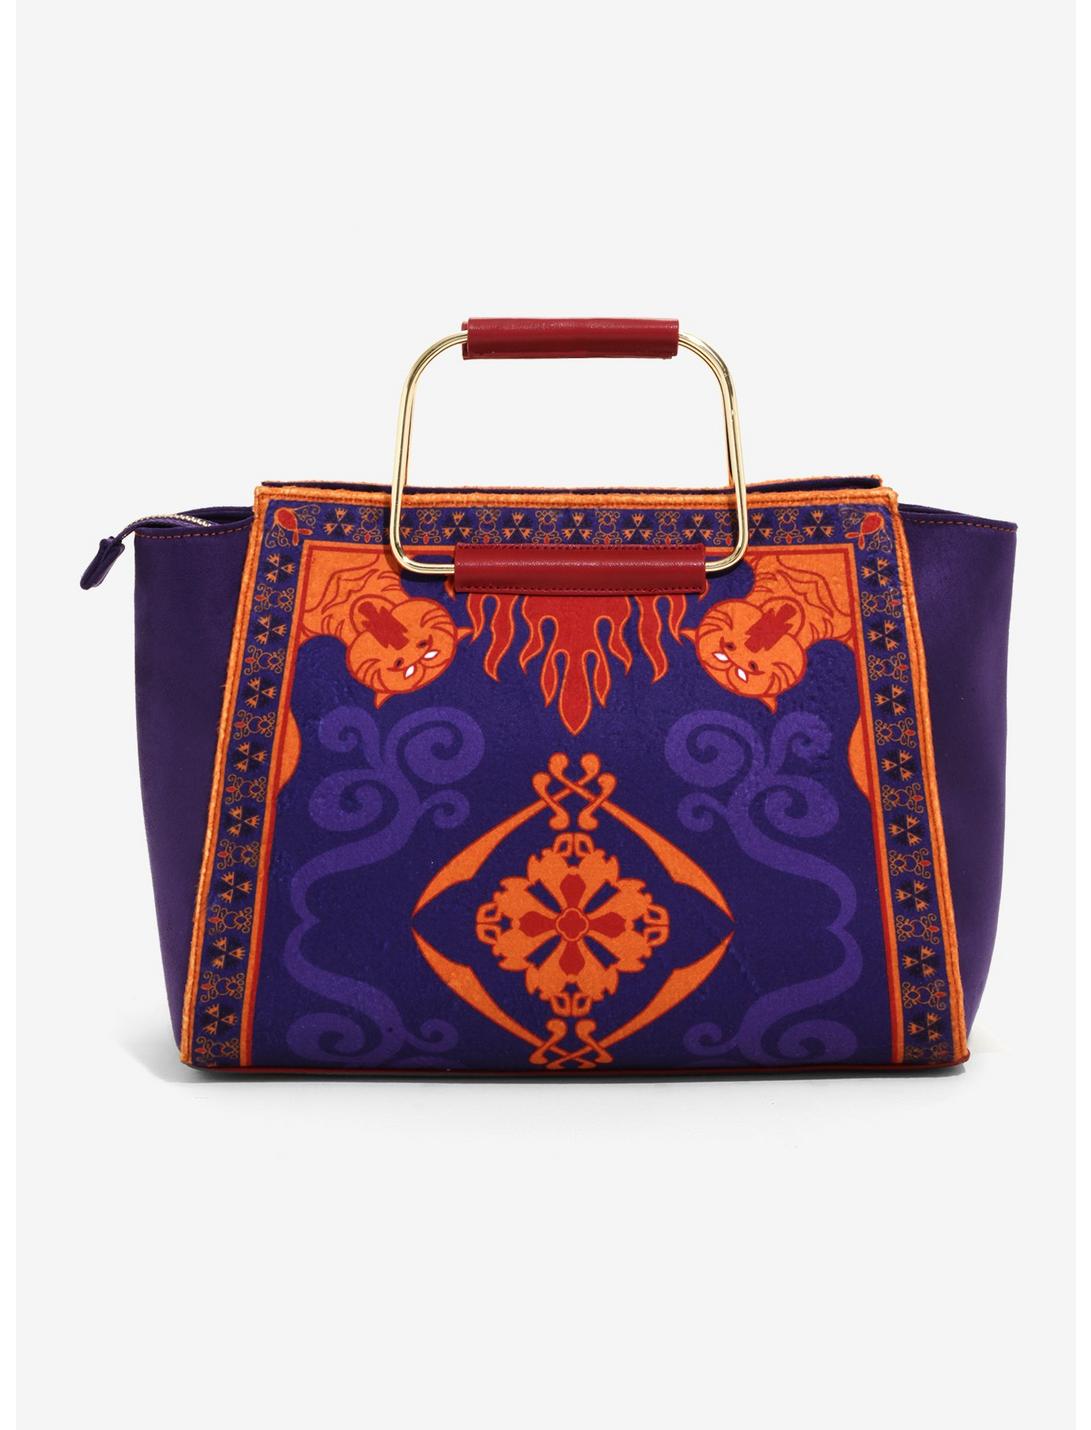 Destination Disney Aladdin Magic Carpet Handbag, , hi-res